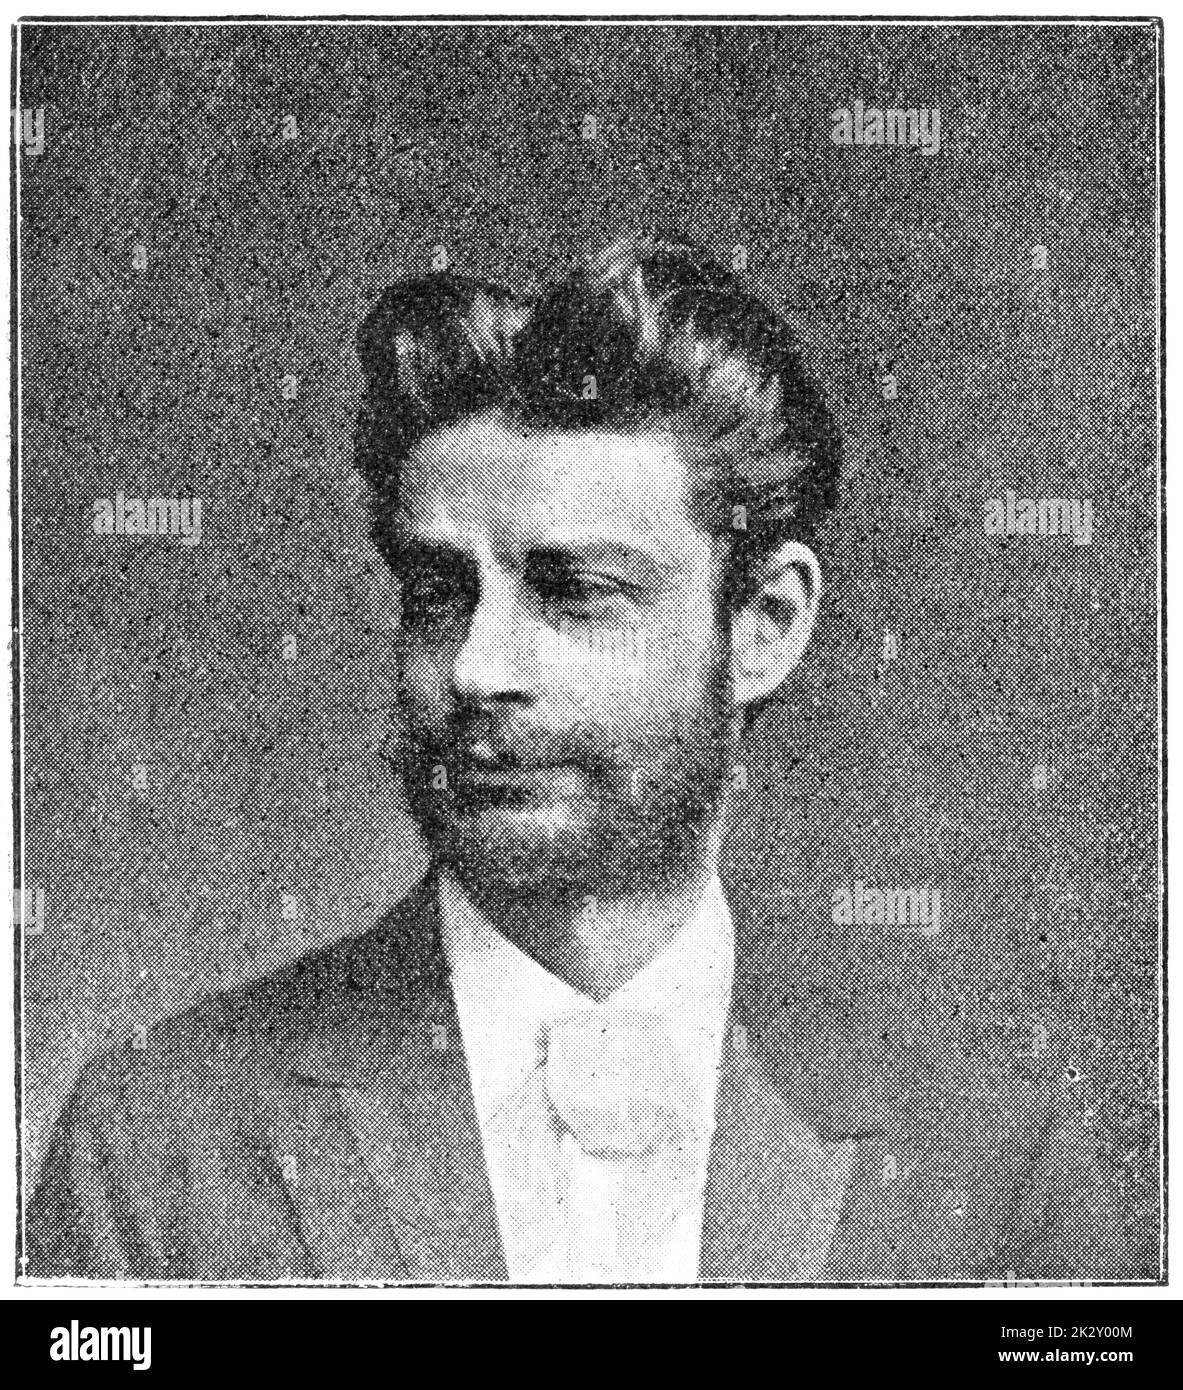 Portrait de Georg Morris Cohen Brandes - critique et érudit danois. Illustration du 19e siècle. Arrière-plan blanc. Banque D'Images